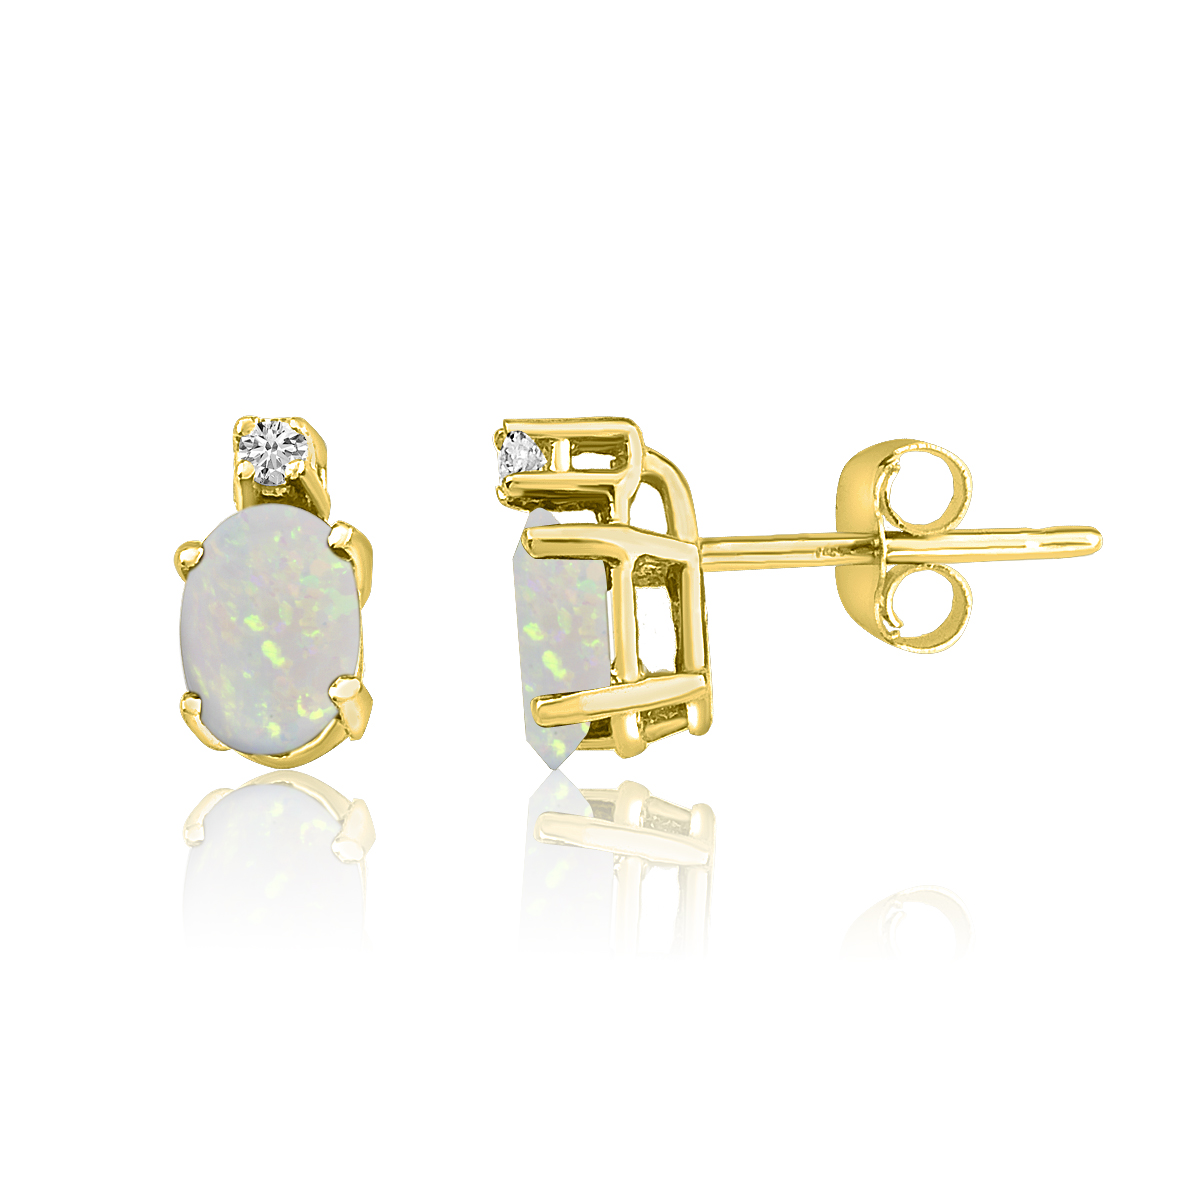 14K Yellow Gold Oval Opal & Diamond Earrings